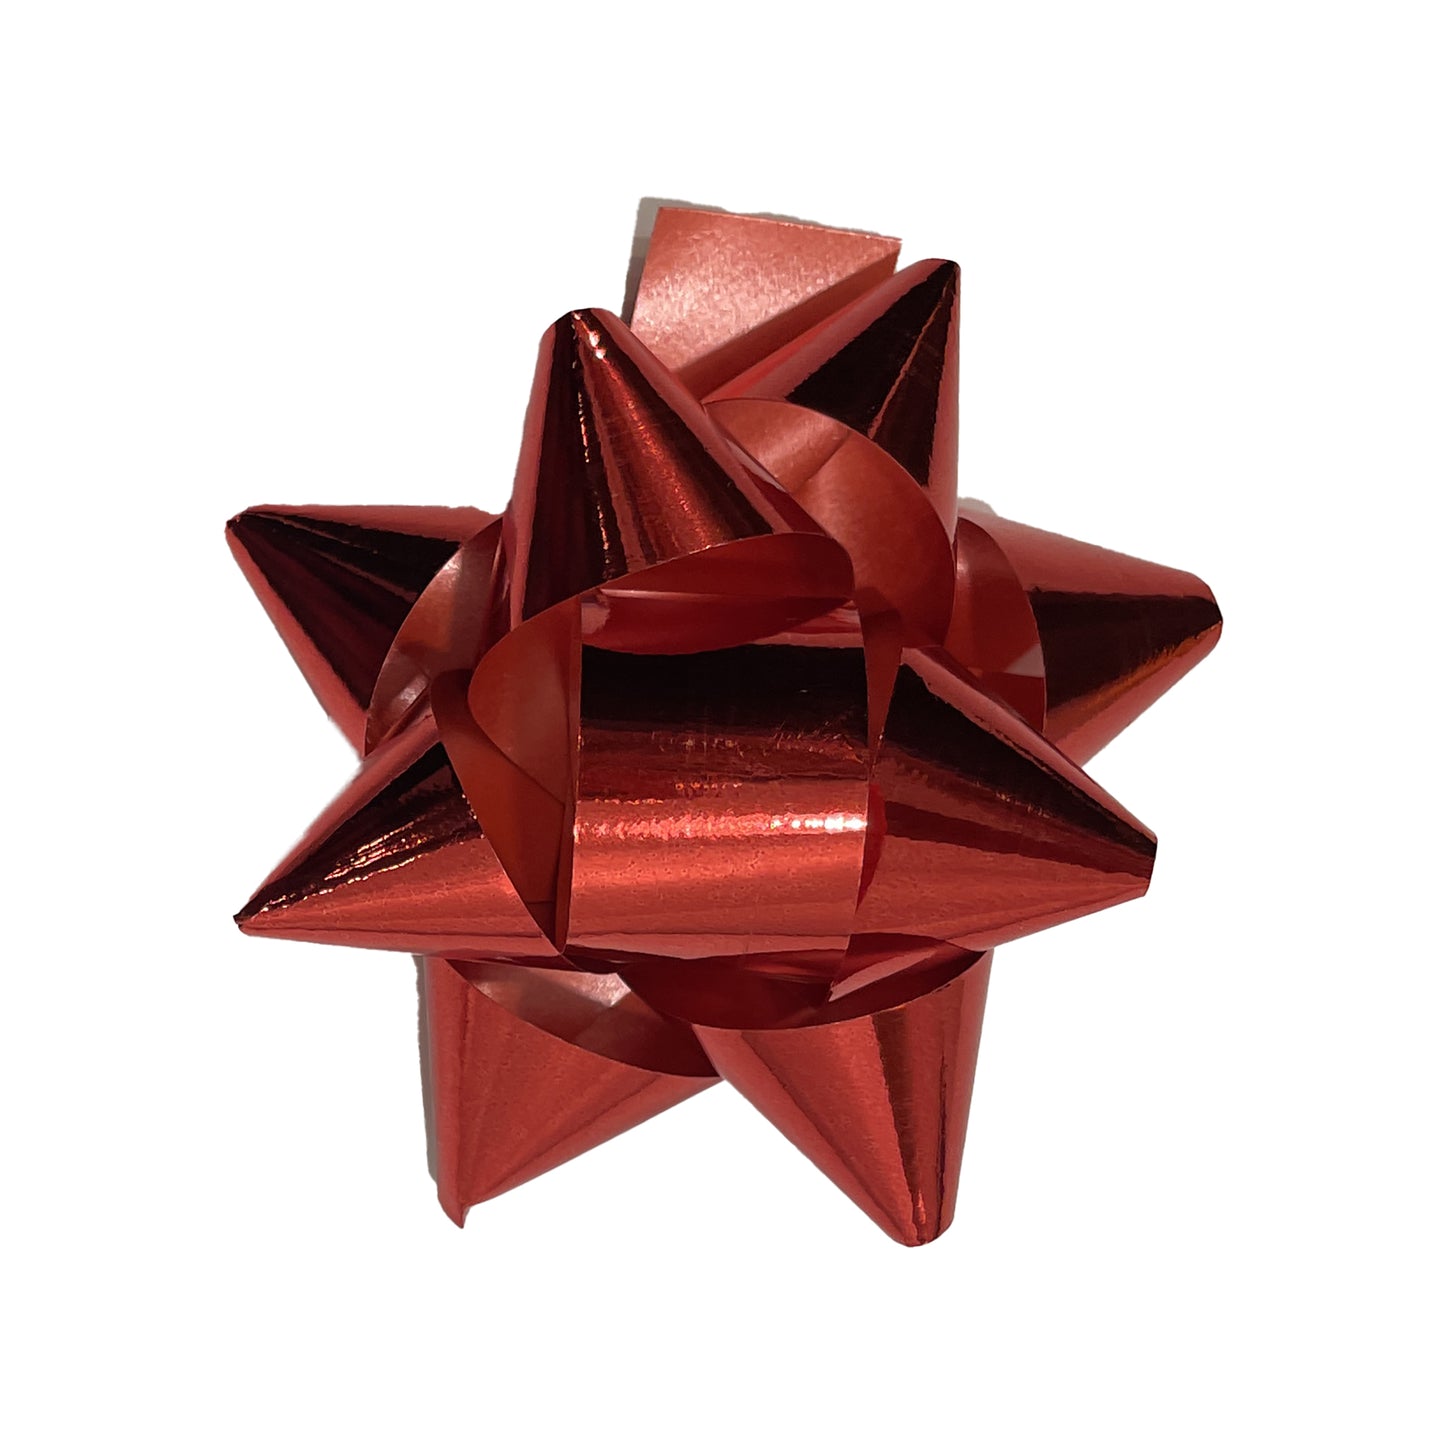 AQ-TIE-7.6x1.8-RED - декоративный самоклеющийся бант из полипропилена 7,6 см x 1.8 см, красного цвета